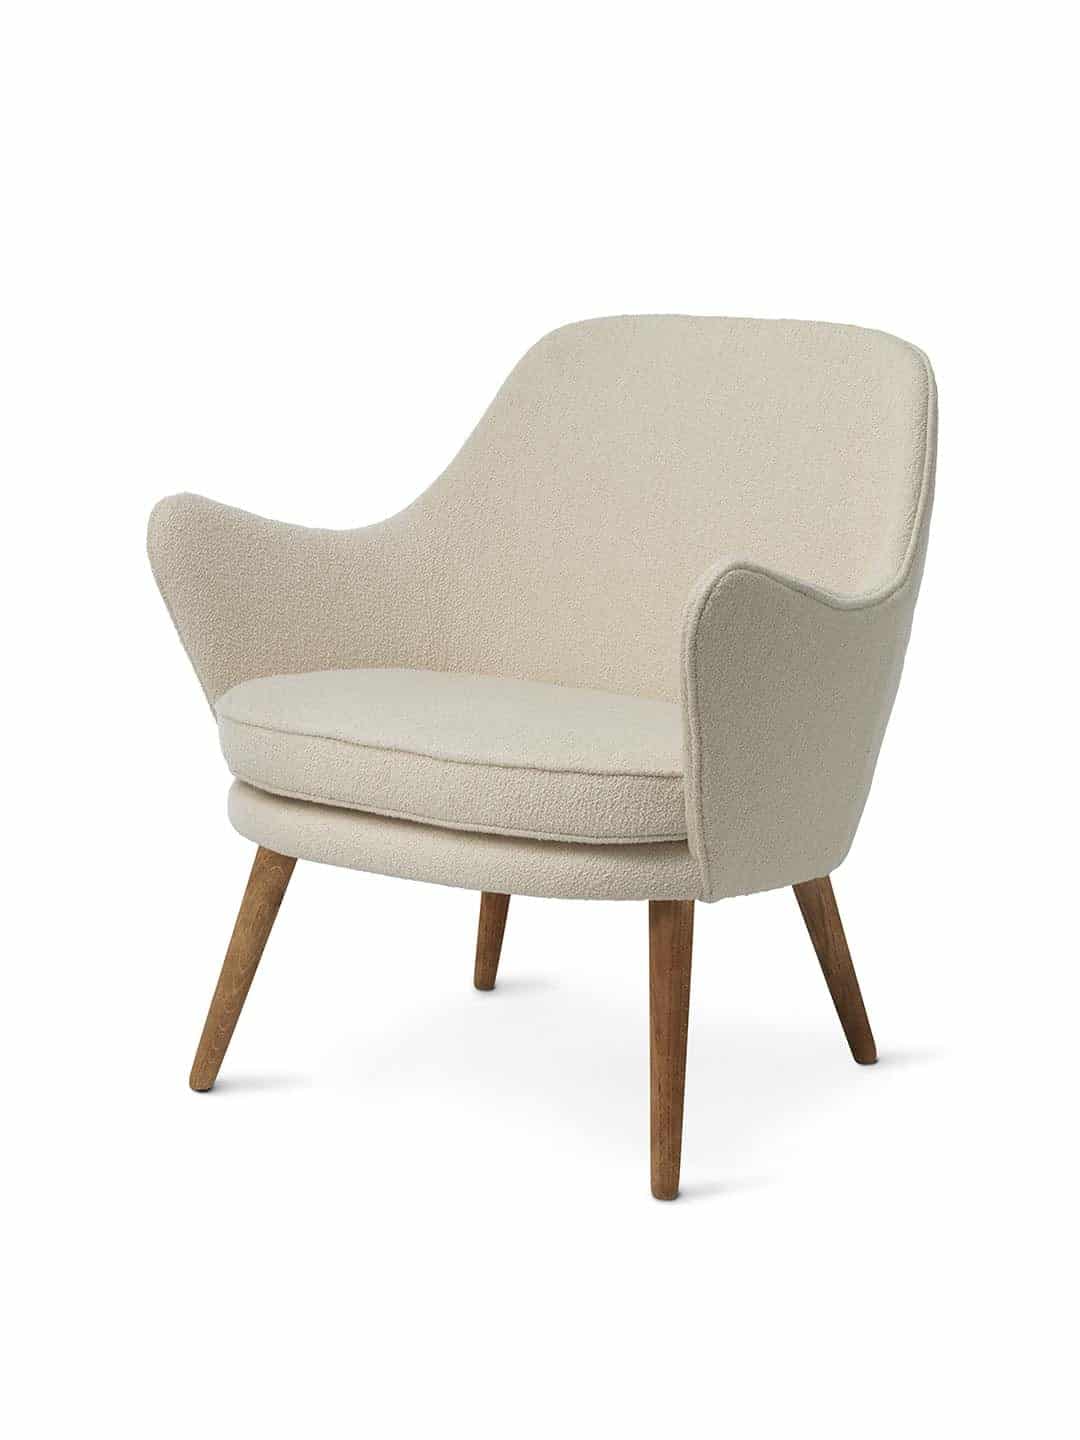 Кресло для отдыха Warm Nordic Dwell кремовый на белом фоне вид сбоку